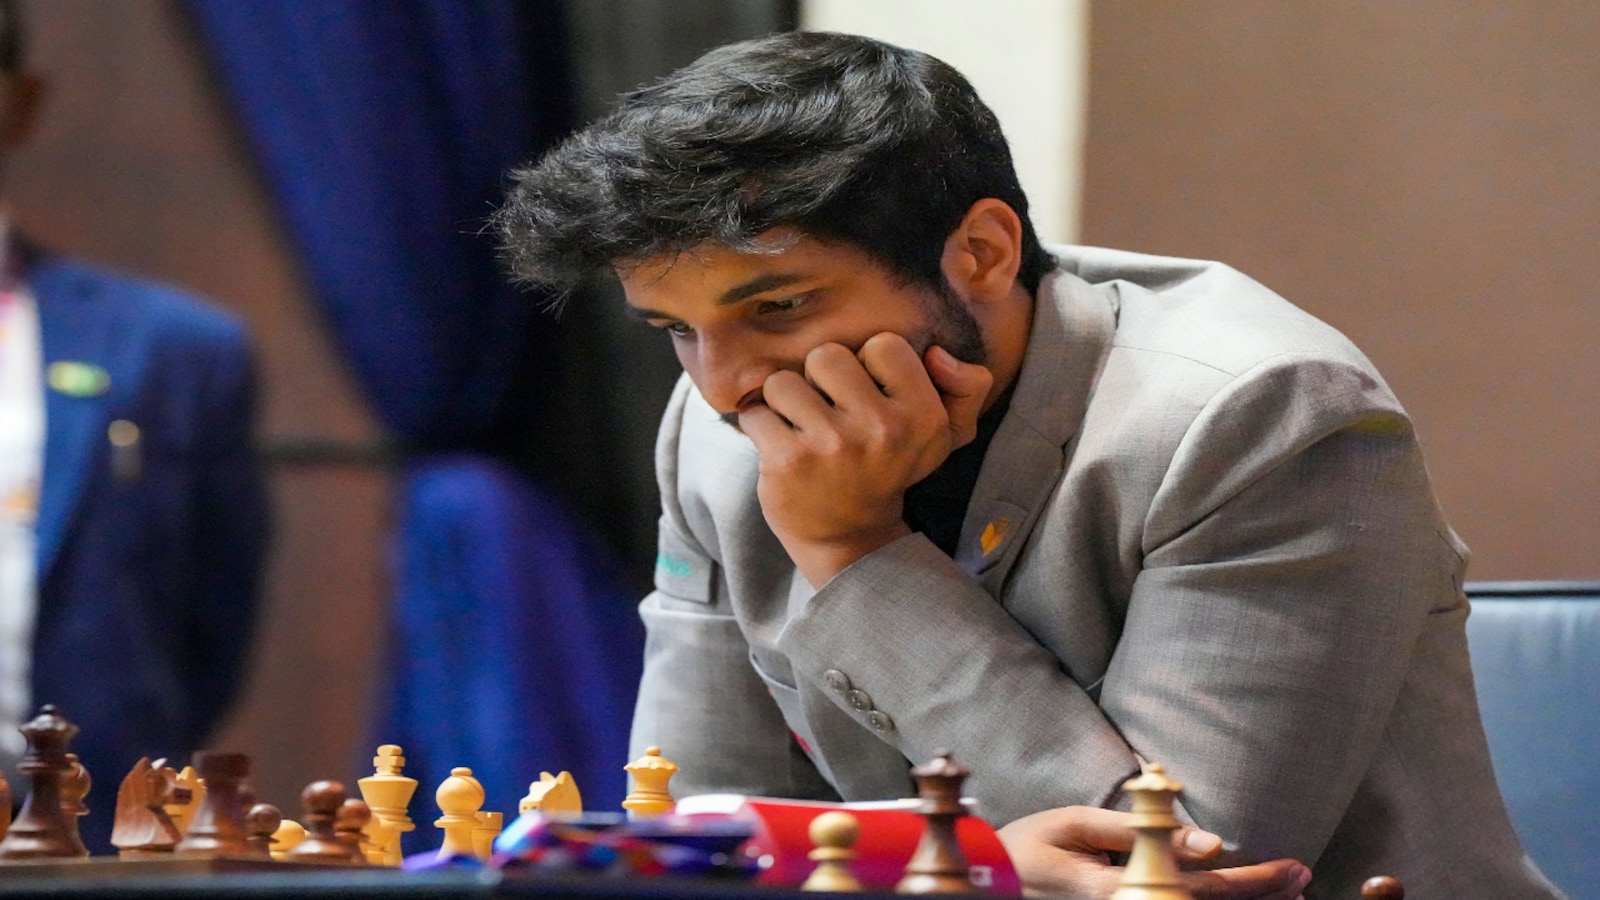 The Winner of Tata Steel Chess Master : r/chess